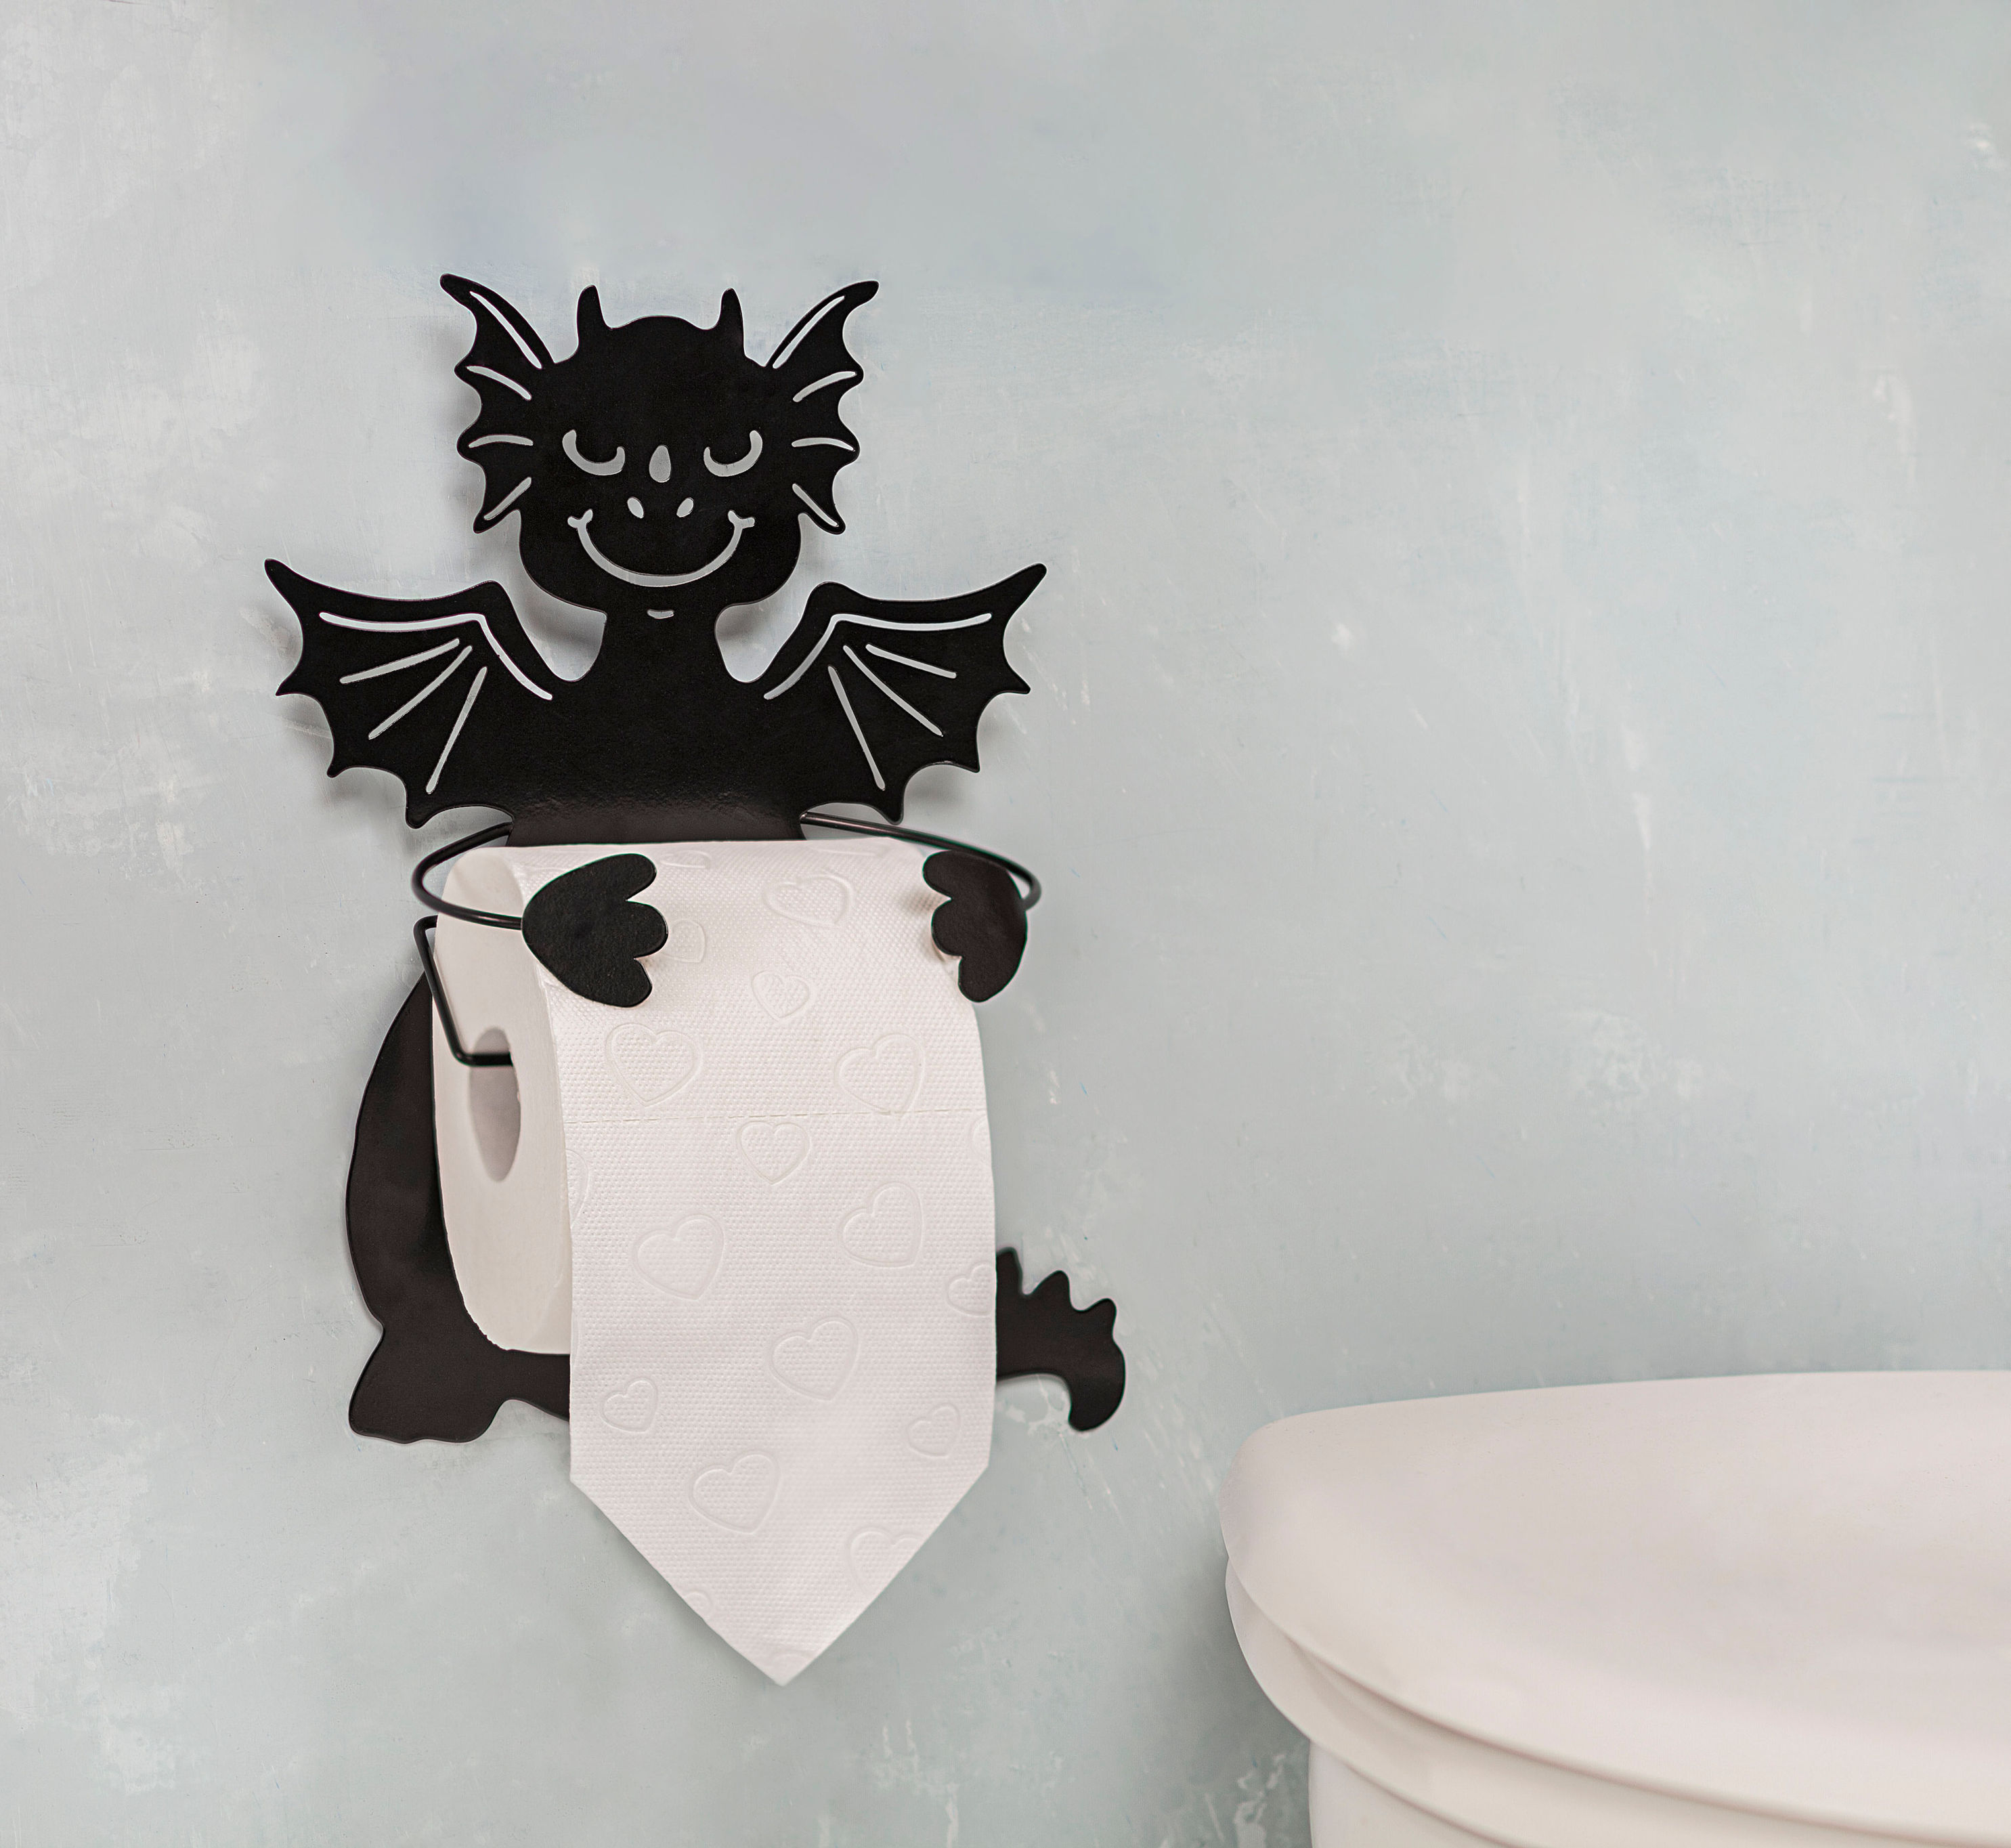 Wand-Toilettenpapierhalter Drache jetzt bei Weltbild.at bestellen